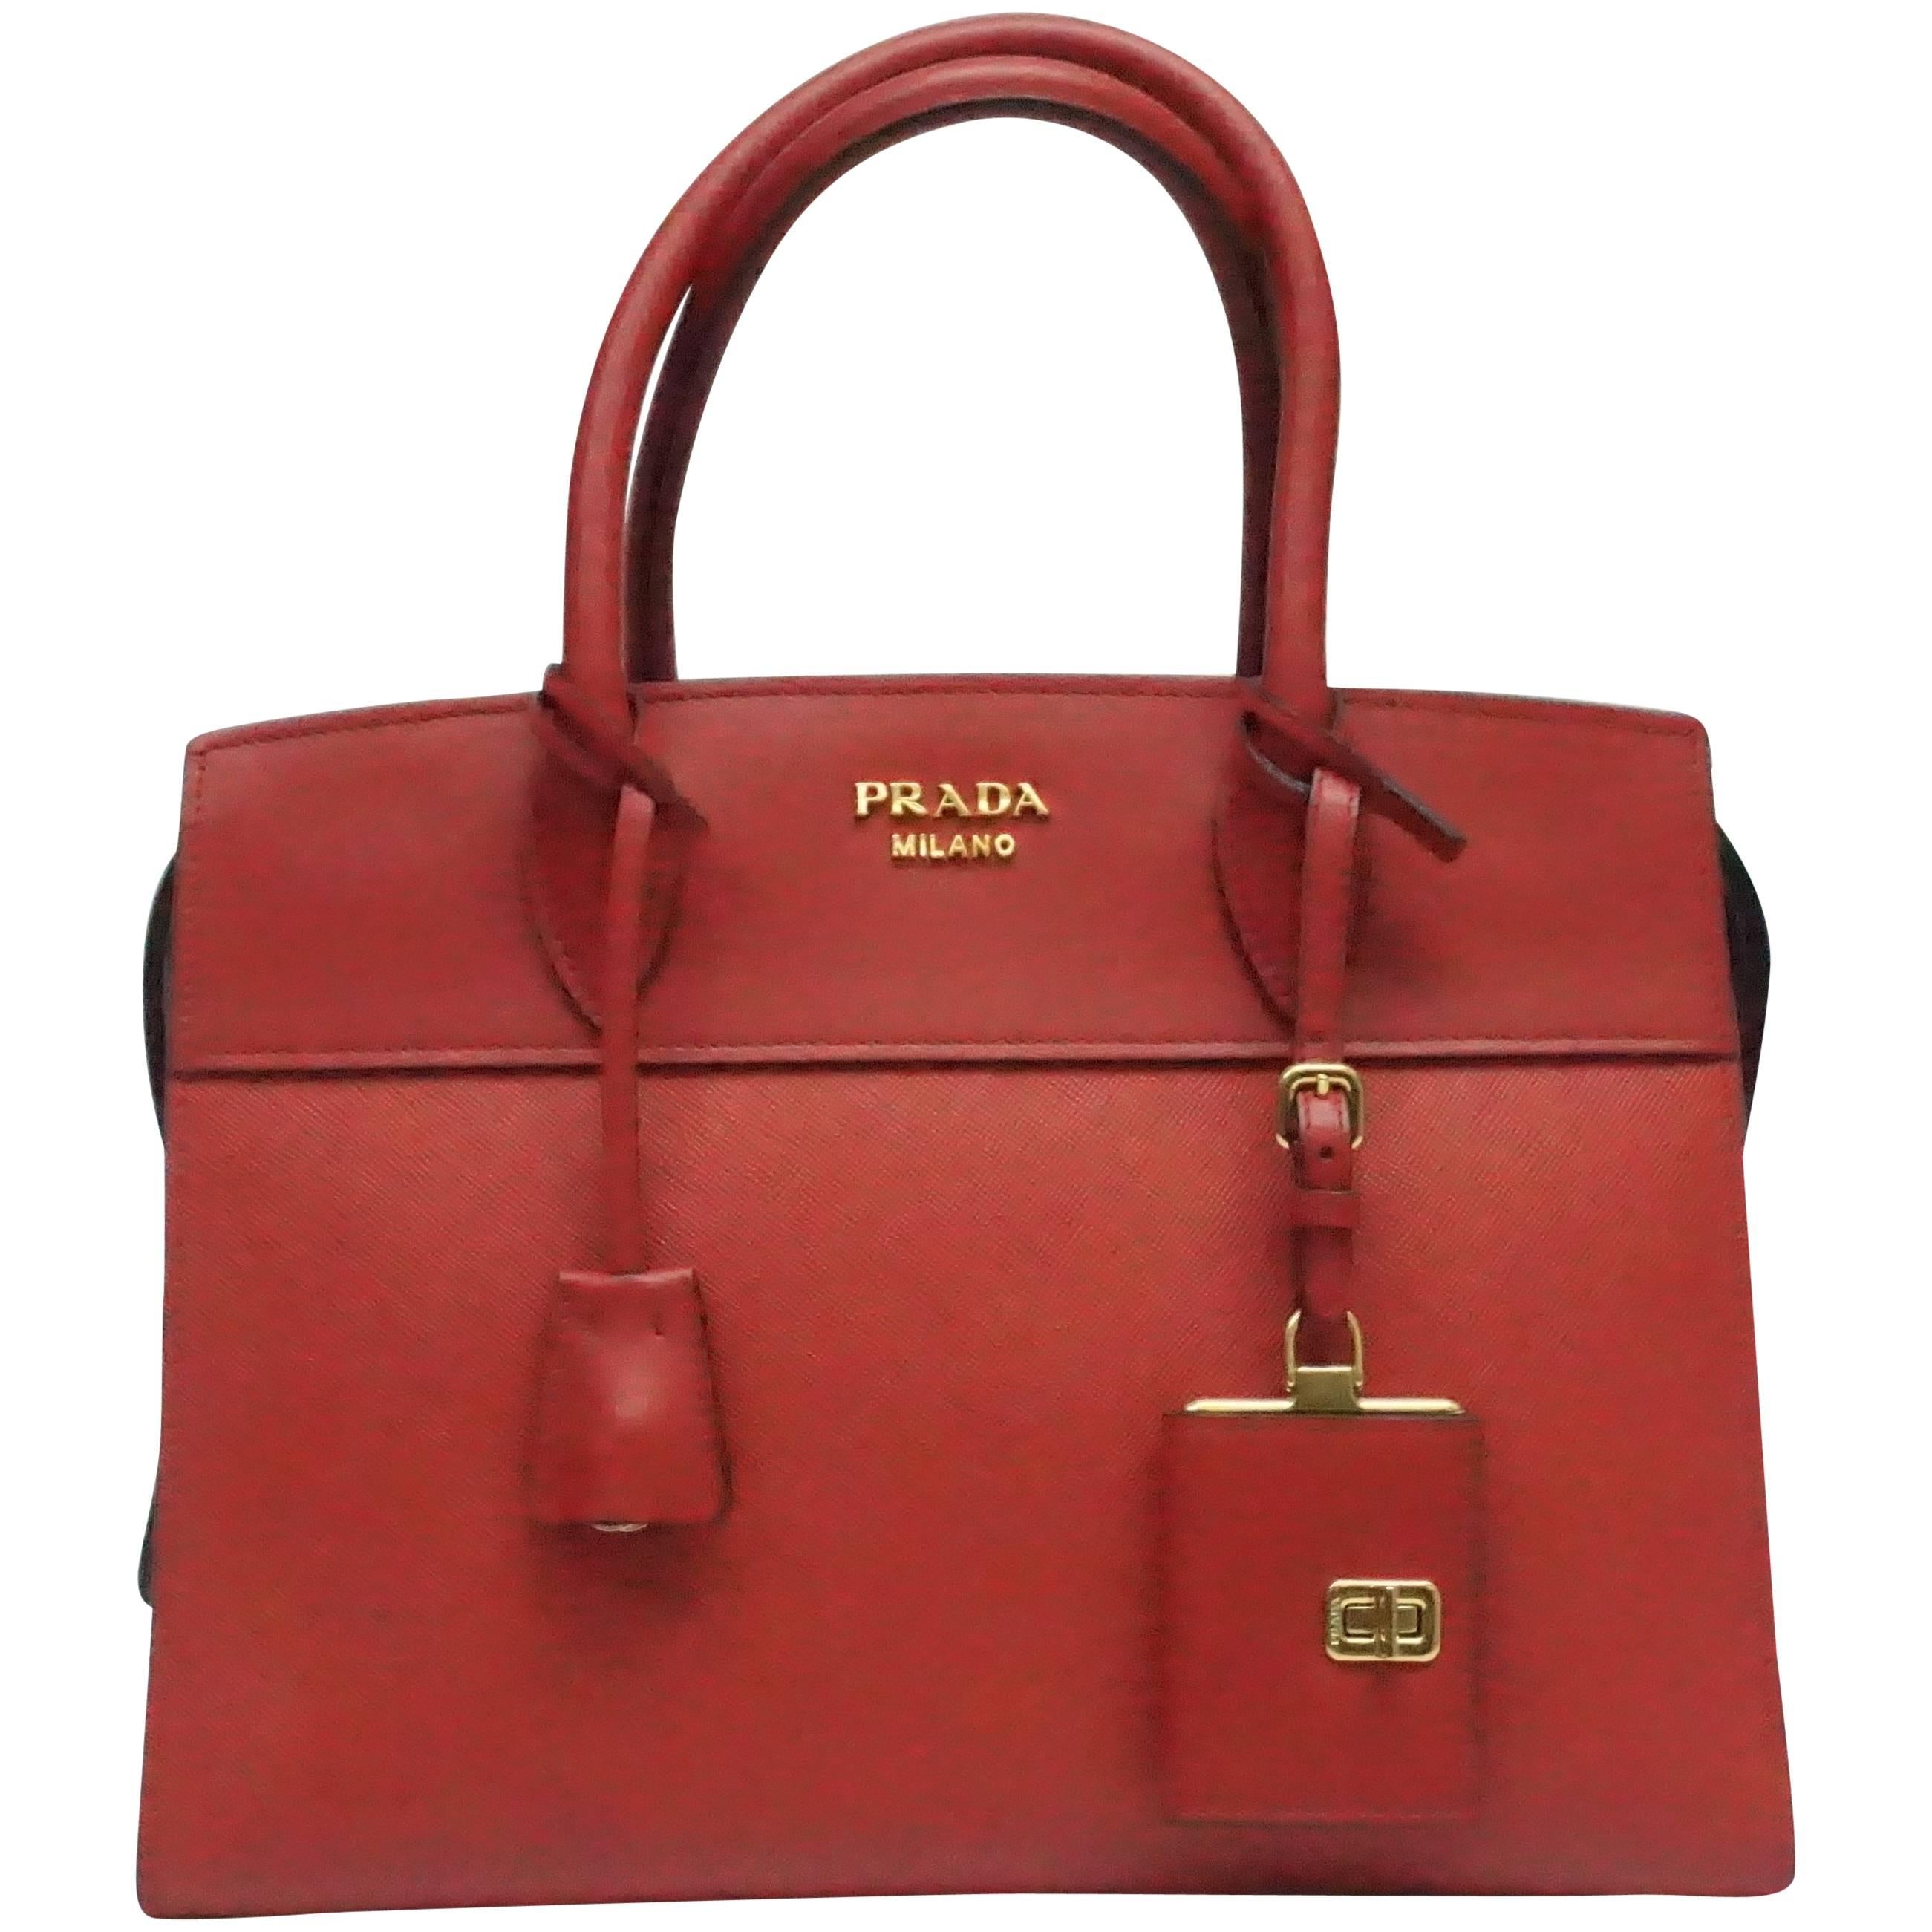 Prada Red Saffiano City Handbag - NEW